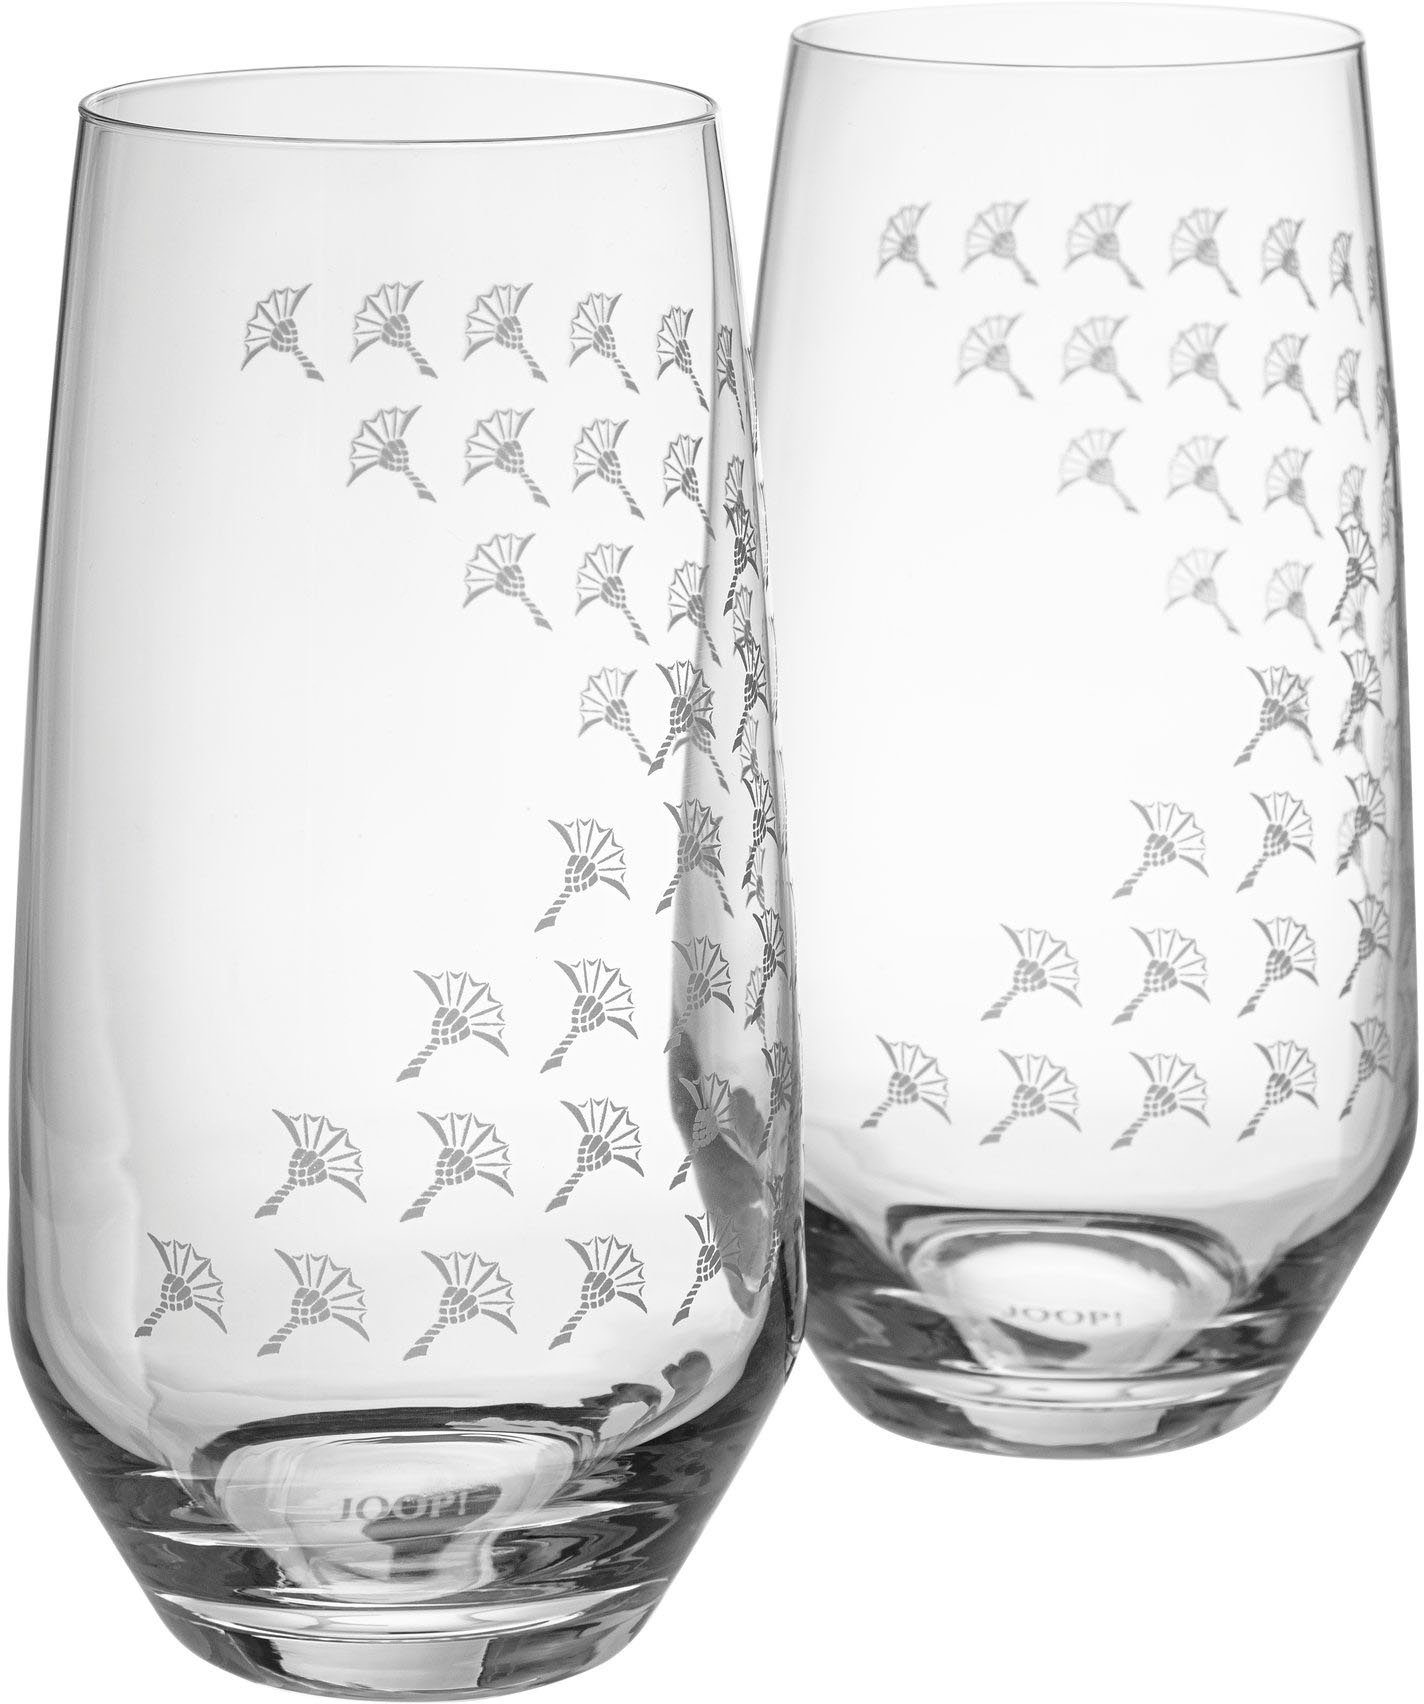 Joop! Cocktailglas JOOP! LIVING - FADED CORNFLOWER Longdrinkglas 2er Set,  Glas, Mit JOOP! Label als traditionelle Bodenmarke